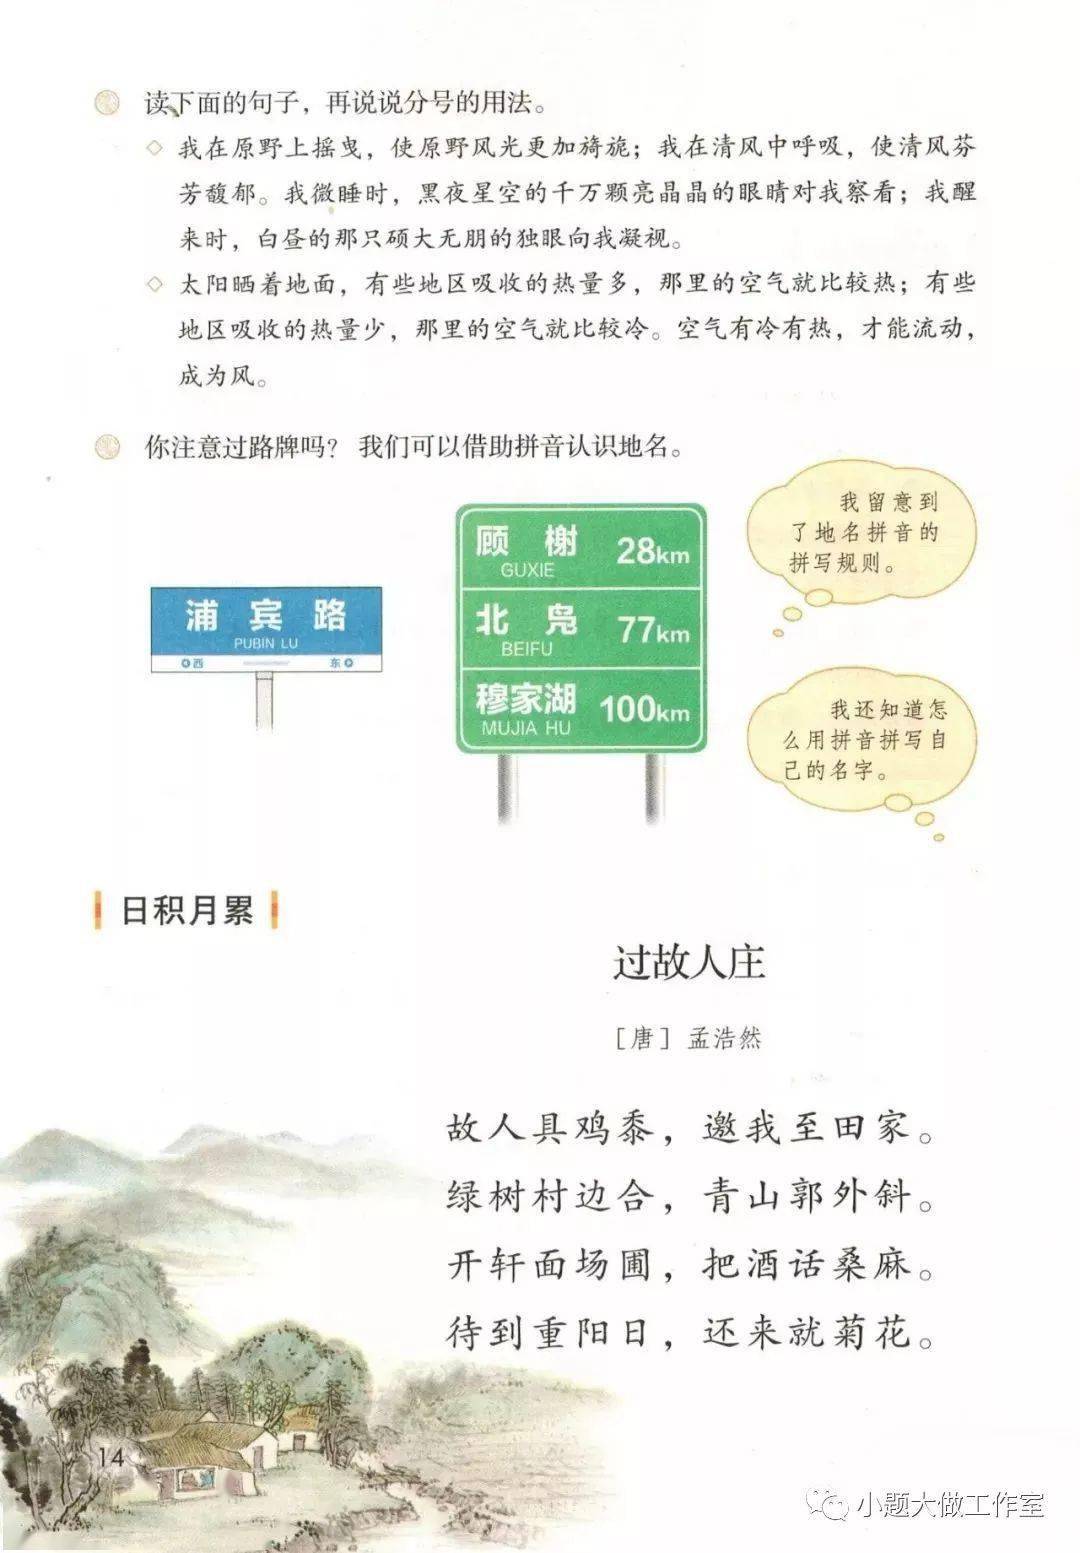 桂林山水中描写颜色的句子